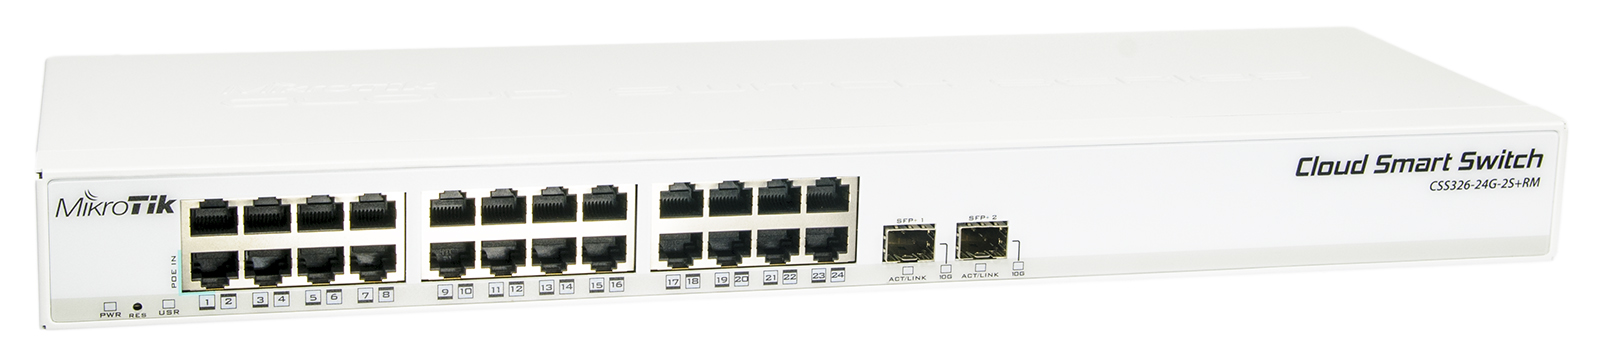 MikroTik Cloud Smart Switch CSS326-24G-2S+RM, zarządzalny przełącznik 24x GE, 2x SFP+